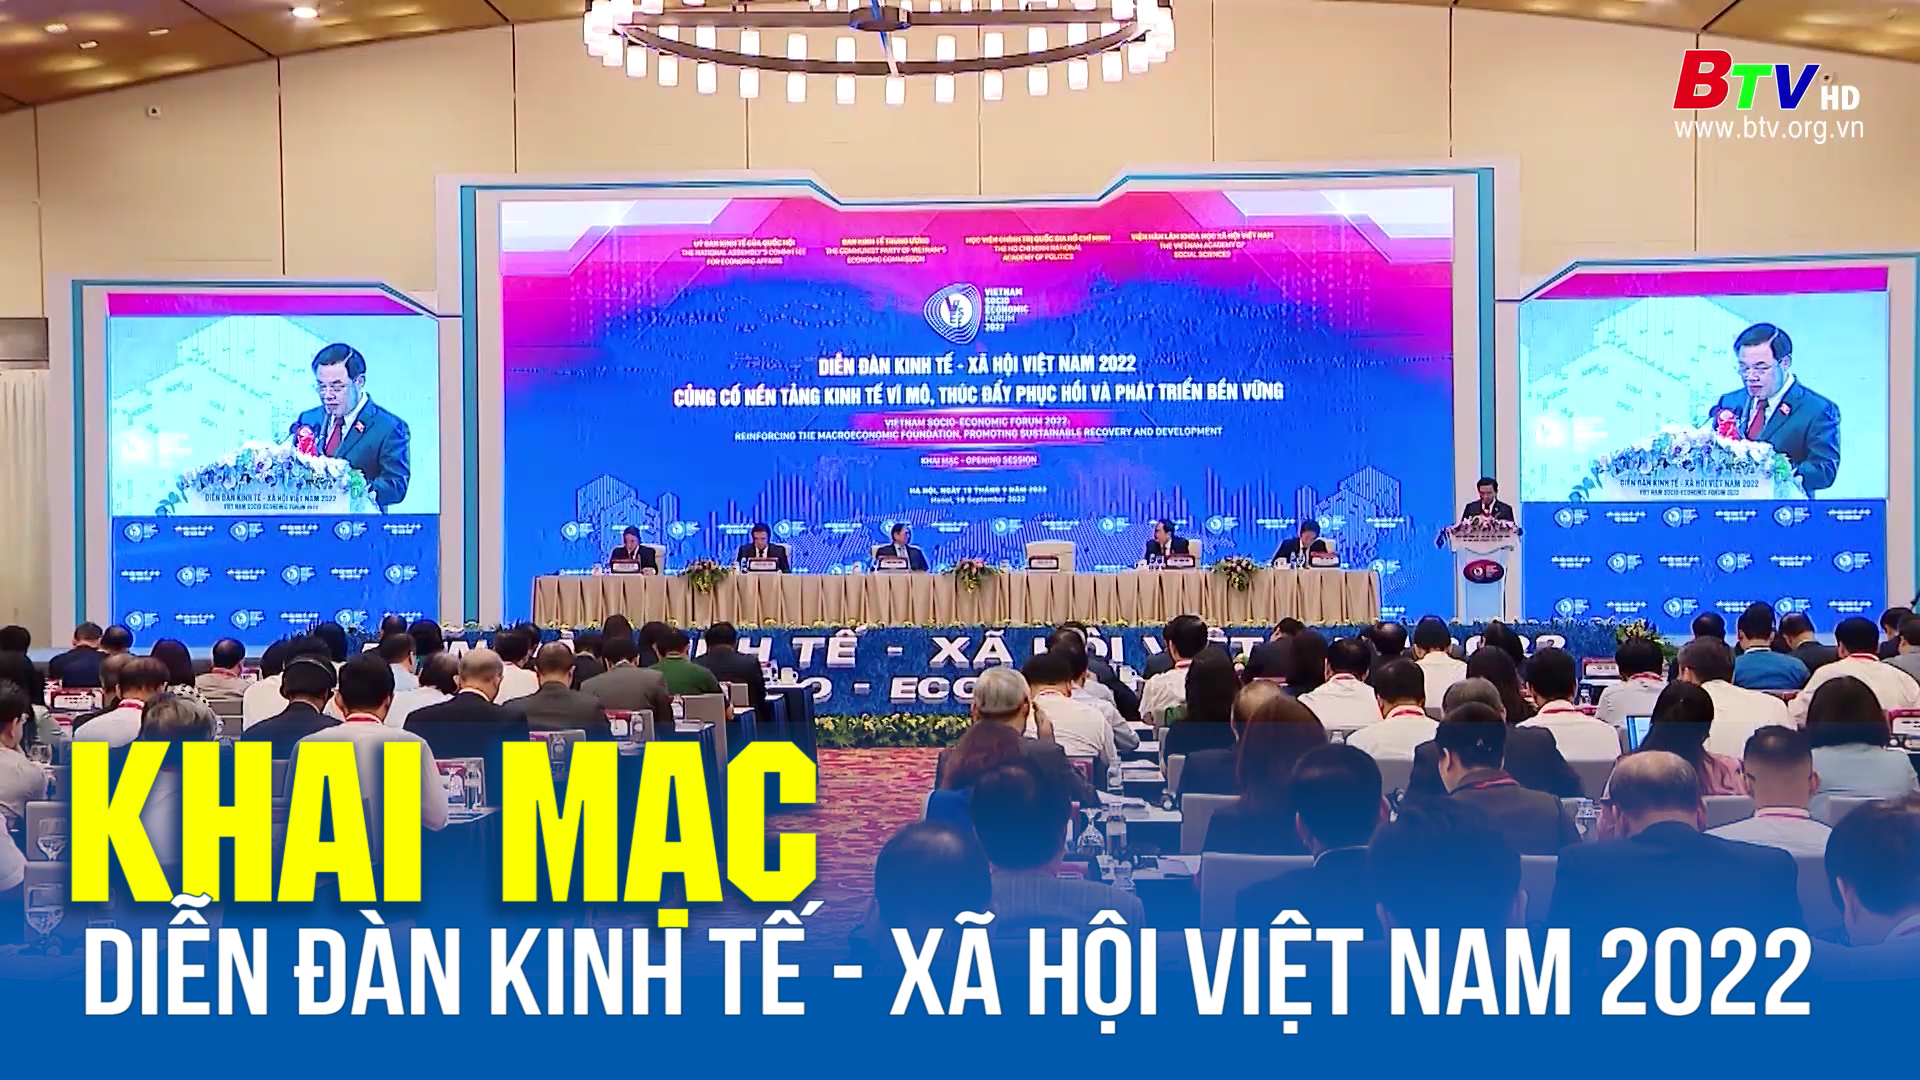 Khai mạc Diễn đàn Kinh tế - Xã hội Việt Nam 2022 